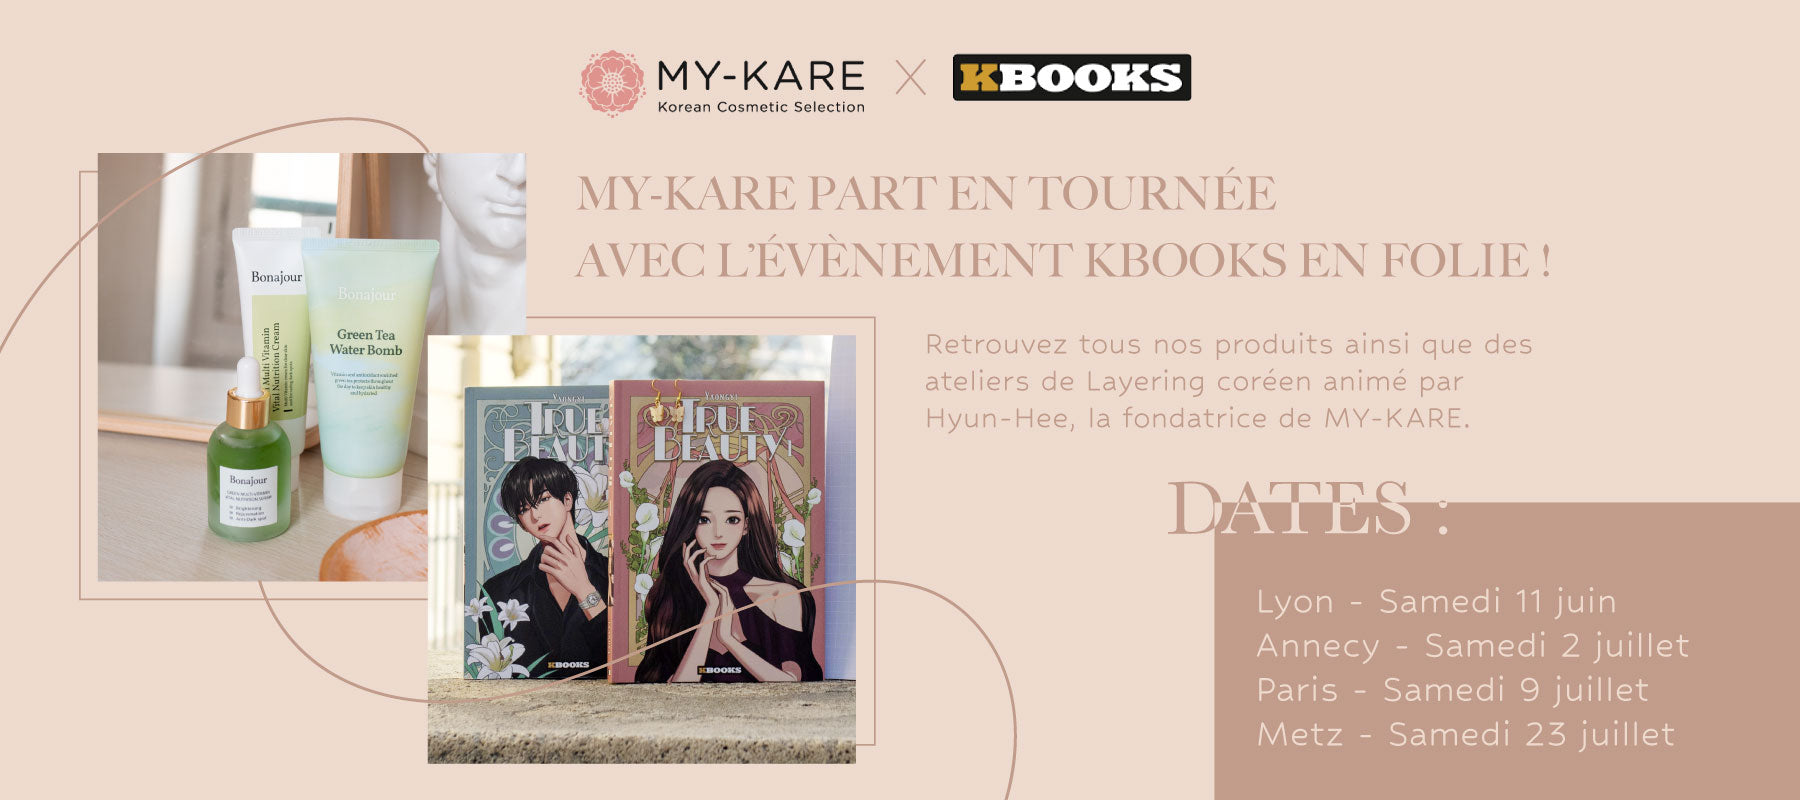 Pour les passionnés de culture coréenne, un évènement à Lyon, Paris, Annecy, Metz pour retrouver KBeauty - soins du visage coréen - et webtoons ou mangas coréens 